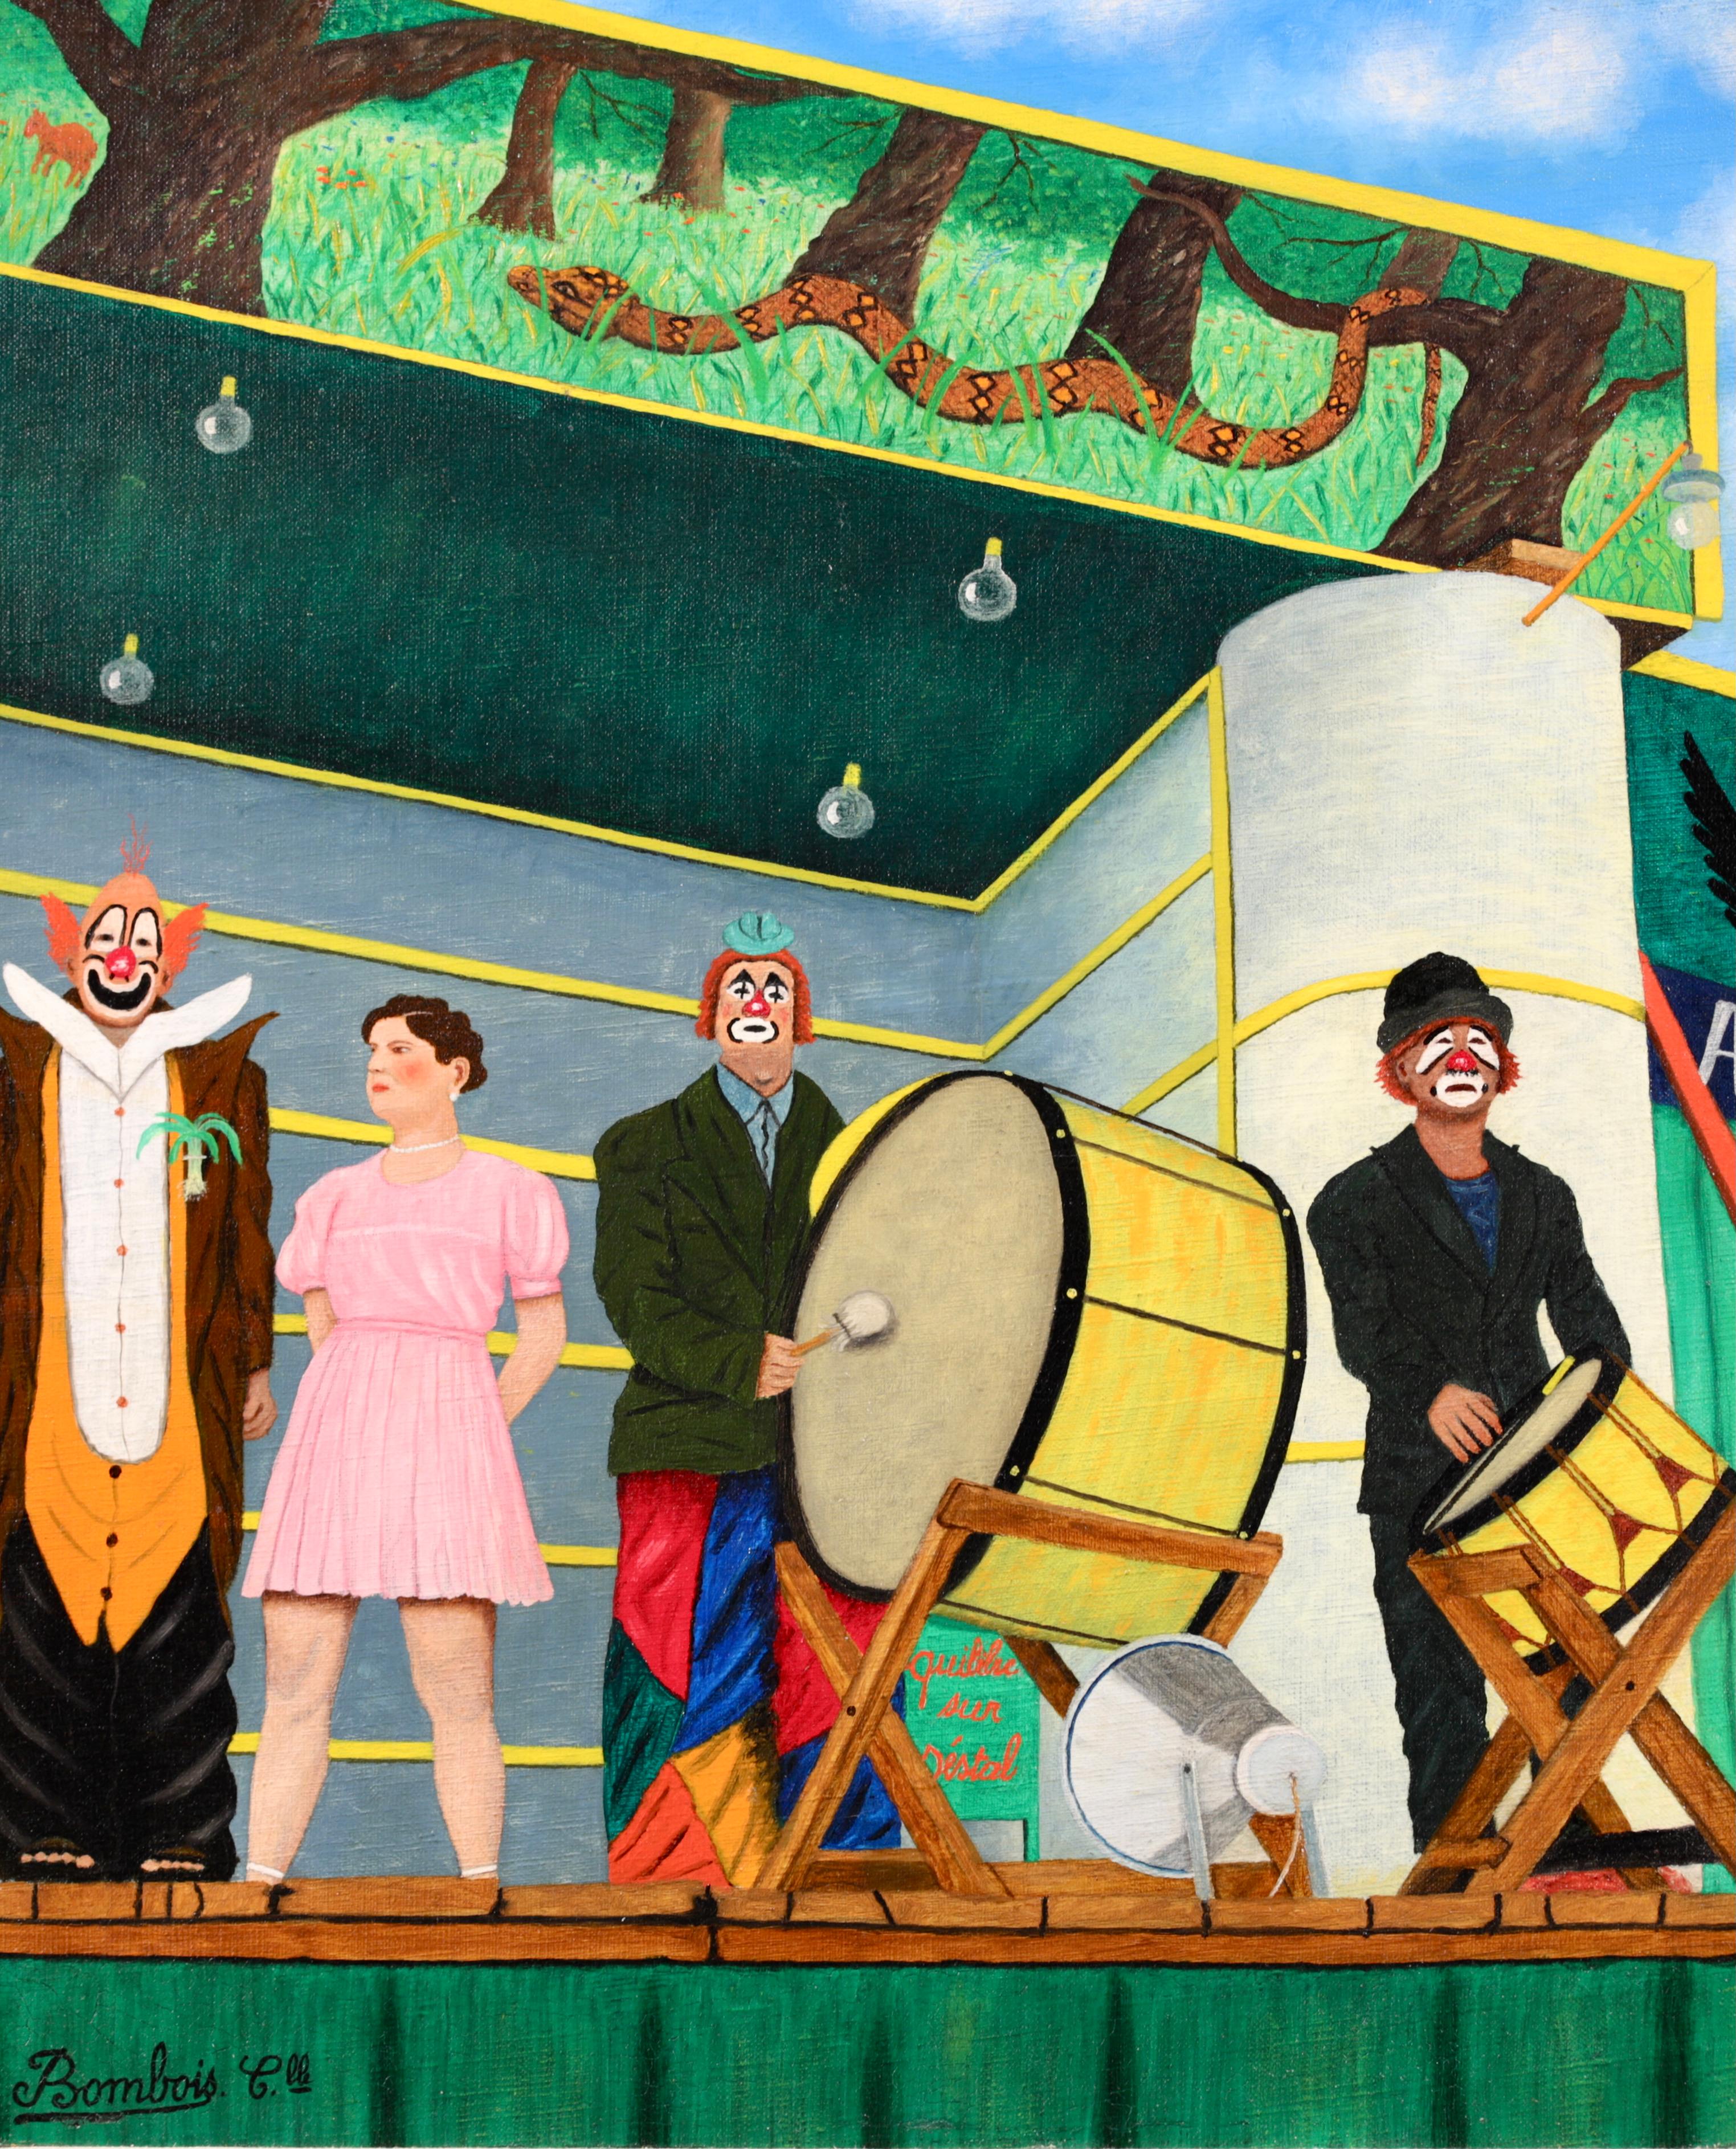 Signiertes figuratives Öl auf Leinwand um 1955 von dem französischen naiven Maler Camille Bombois. Dieses charmante Werk zeigt Zirkuskünstler - drei Clowns und eine starke Frau in einem rosa Kleid - auf einer Freilichtbühne. Zwei der Clowns schlagen